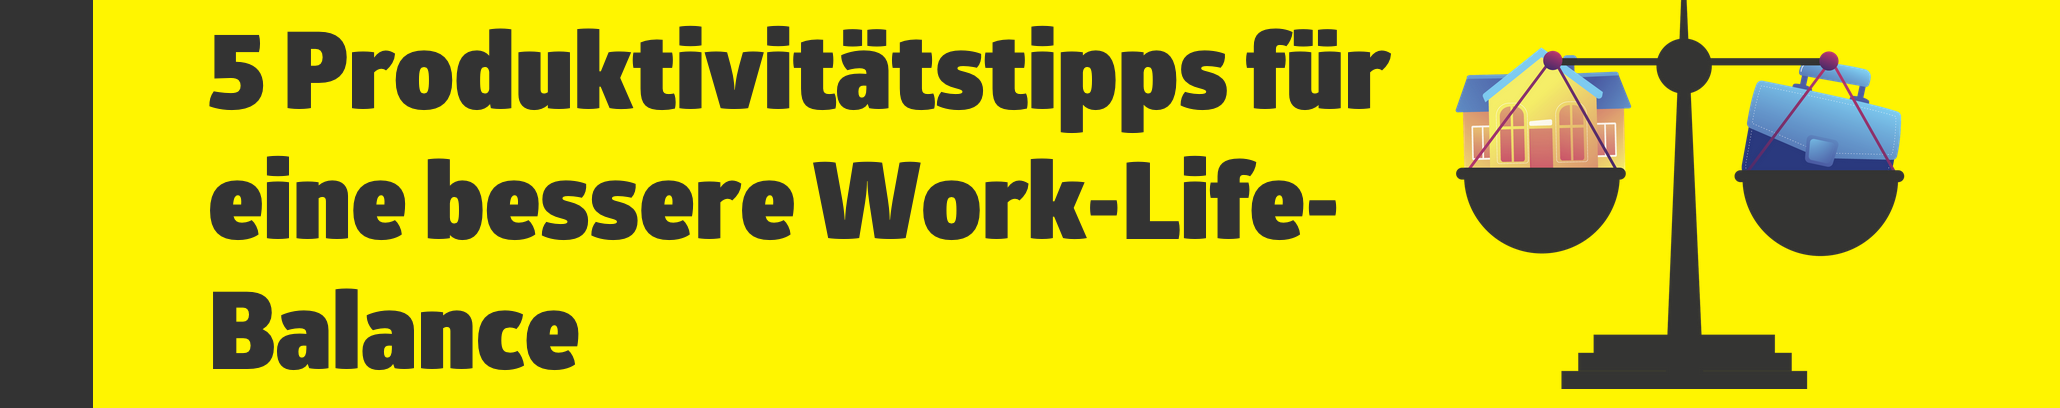 5 Produktivitätstipps für eine bessere Work-Life-Balance